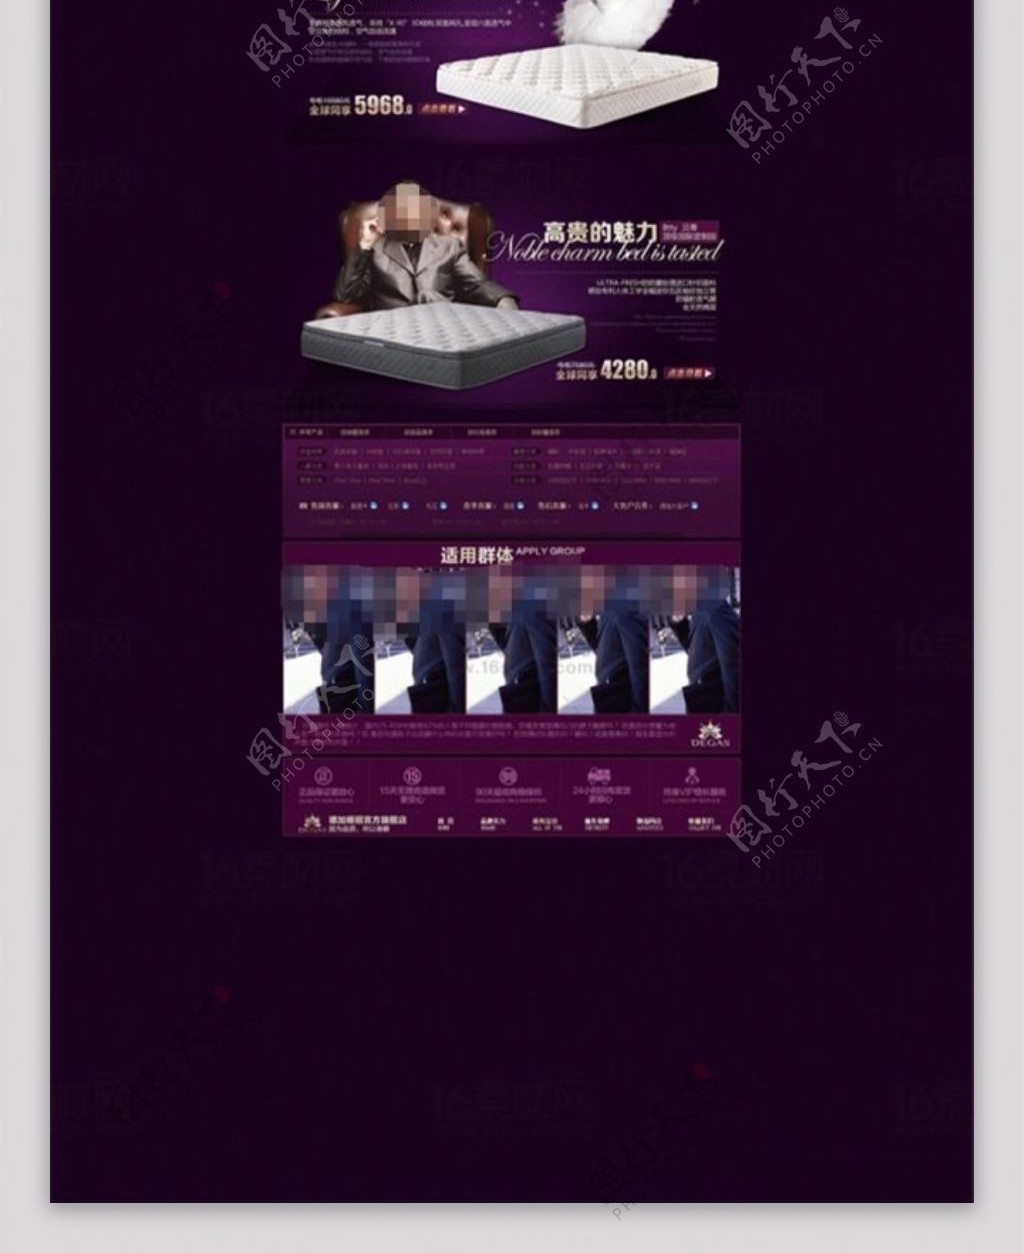 紫色高档淘宝床品促销活动页psd分层素材